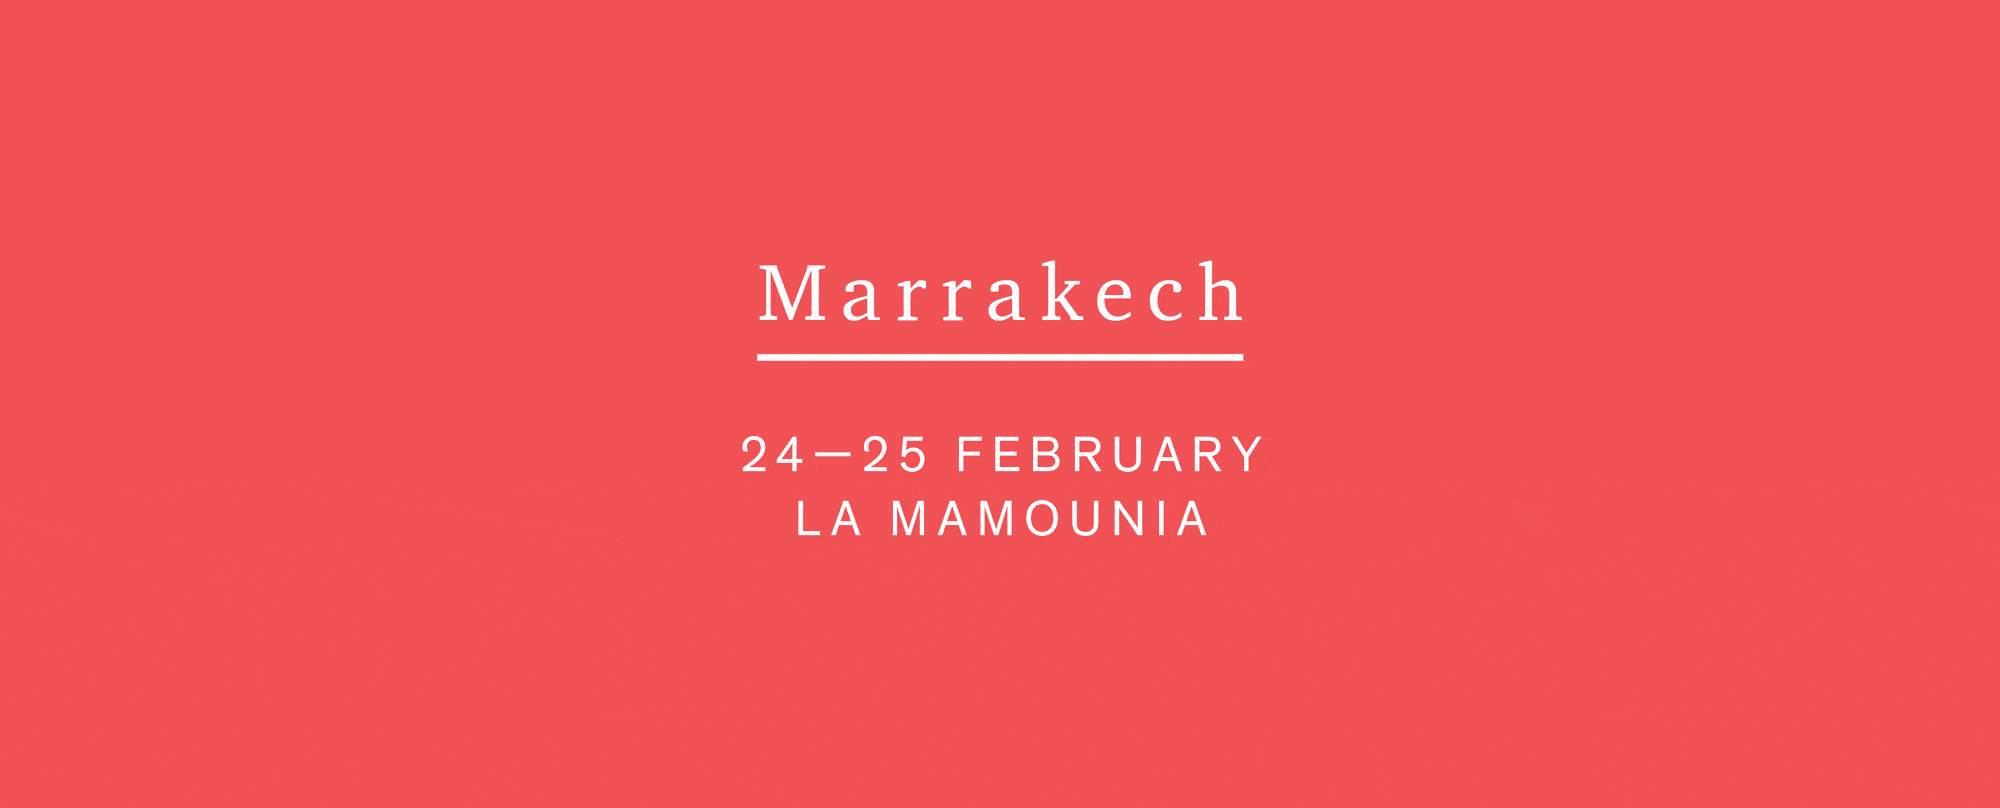 1-54 Marrakech